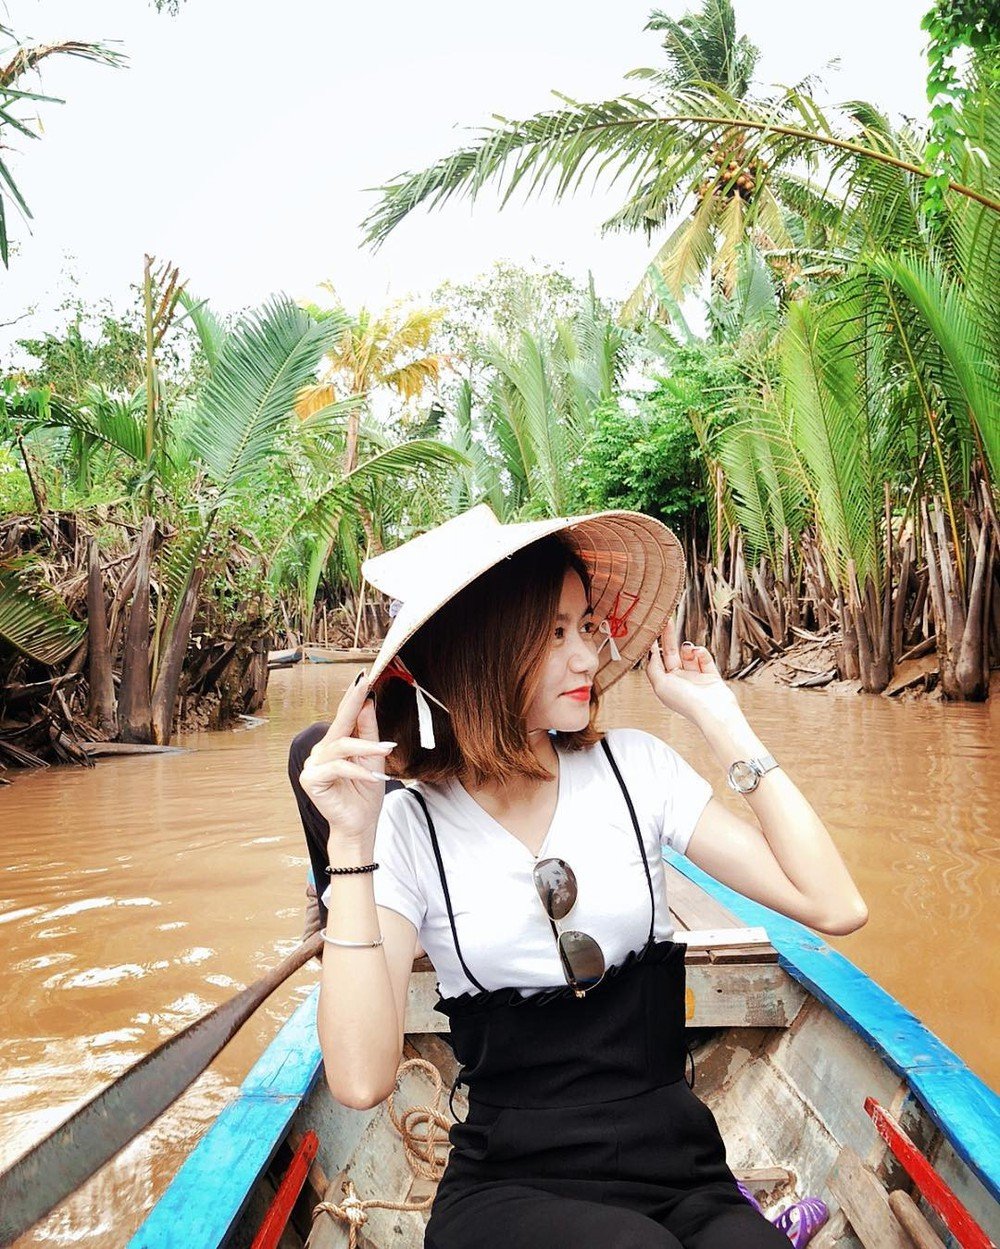 Bạn nữ đội nón chụp ảnh khi đang ngồi thuyền chạy dọc con sông ngắm miệt vườn xanh mướt